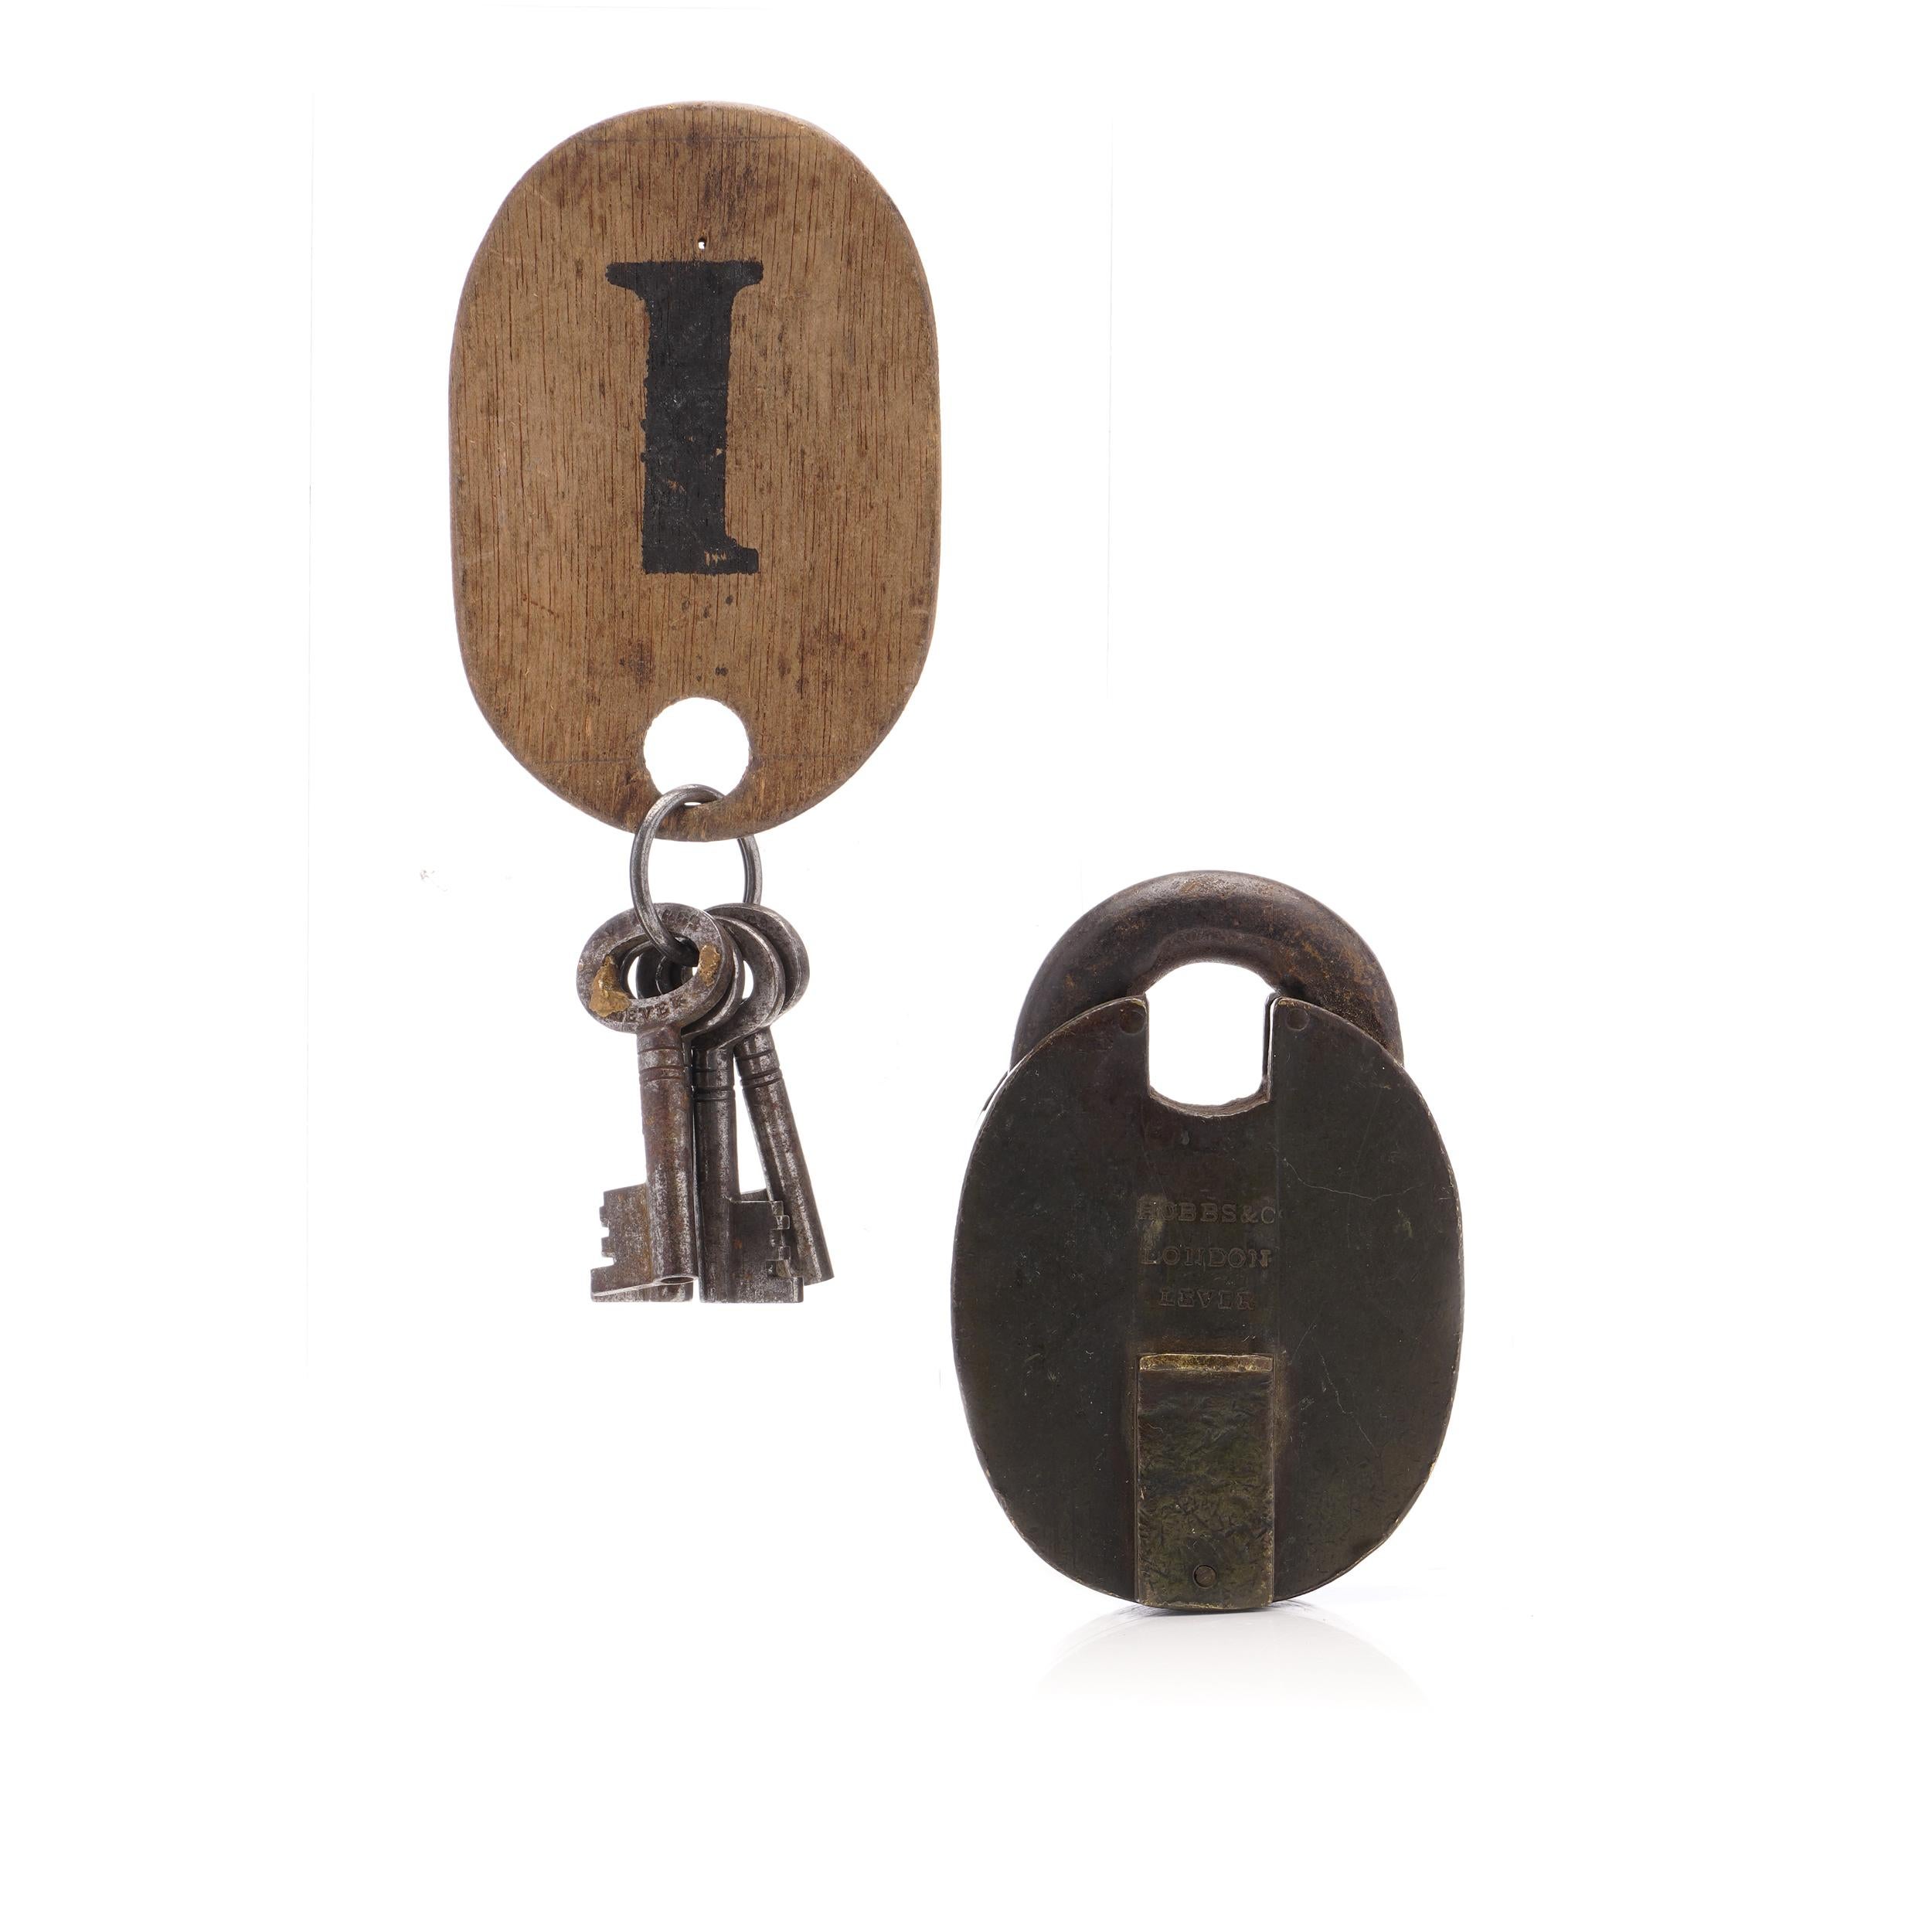 The Hobbs & Co. Le cadenas victorien en fer lourd avec sa clé d'origine est une pièce remarquable de l'histoire et de l'artisanat. Cette serrure ancienne, mesurant 9,2 cm x 6,3 cm x 2,5 cm et pesant 702 grammes, représente l'ingéniosité de son